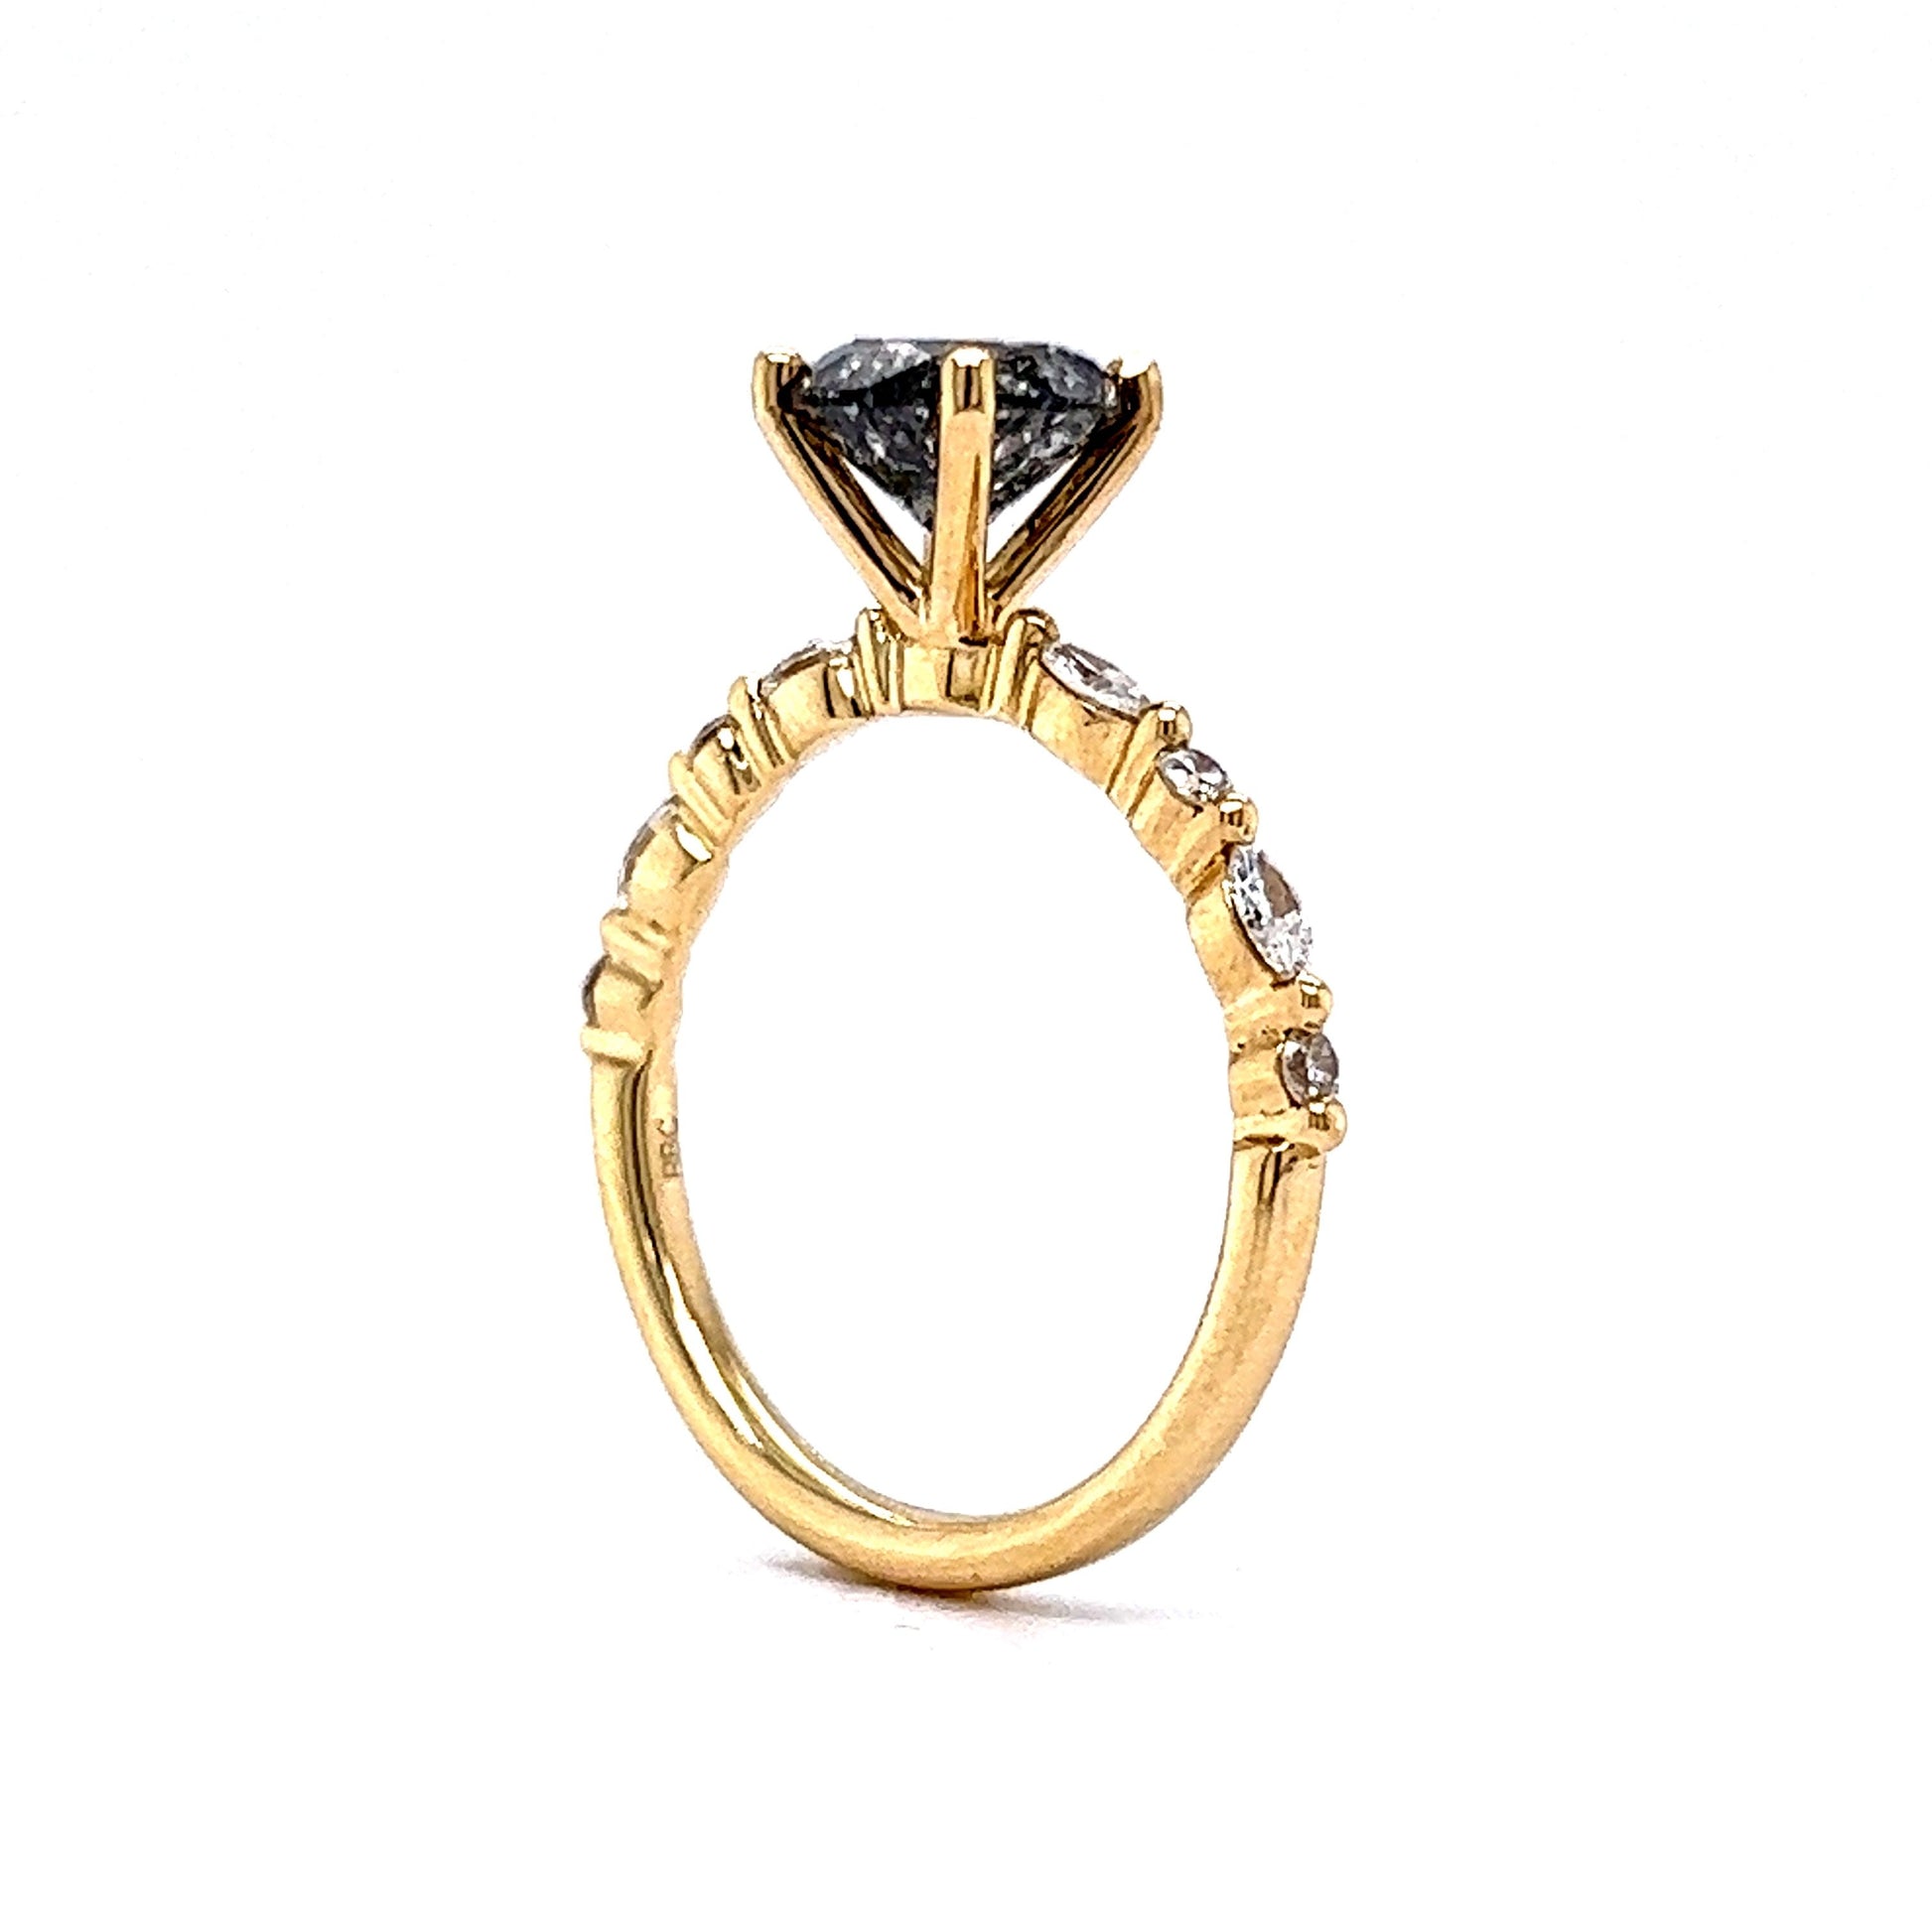 1.65 Salt & Pepper Diamond Engagement Ring in 14k Yellow Gold